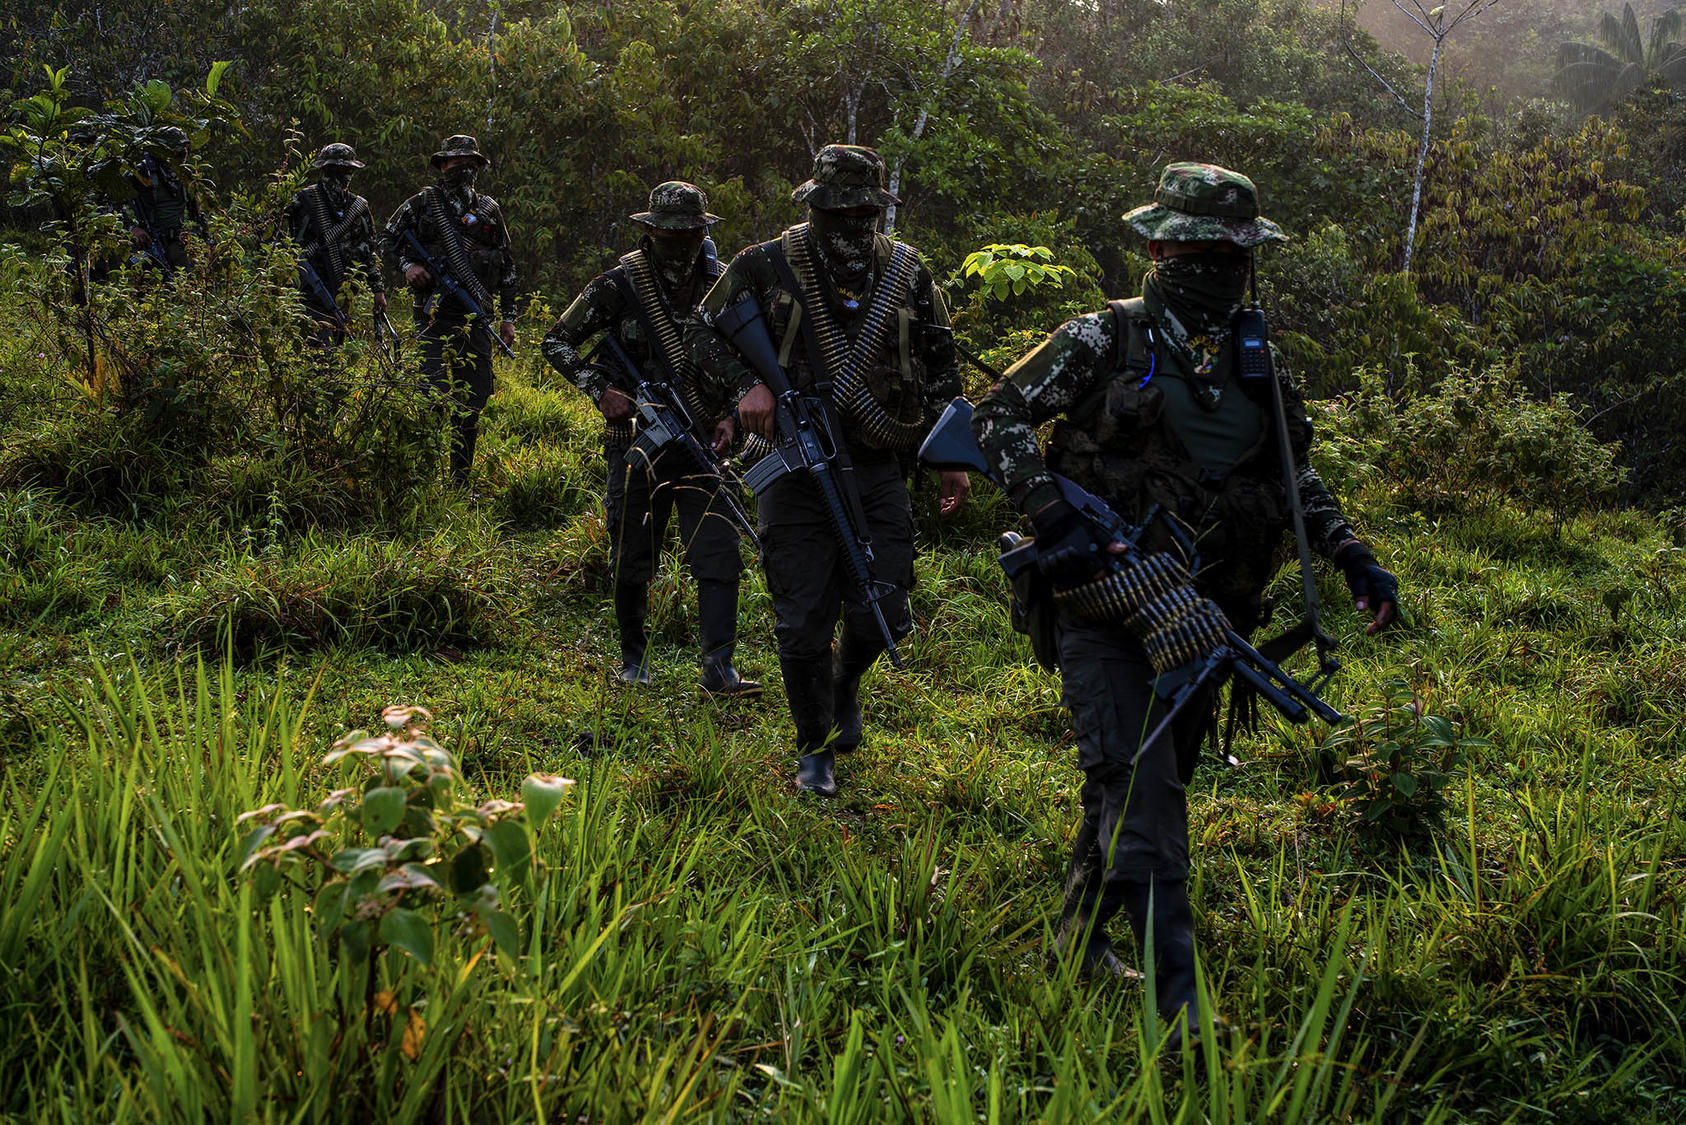 Combatientes enmascarados de una milicia llamada Comando de Frontera se desplazan por terreno selvático el año pasado. El grupo rechazó el acuerdo de paz de 2016 y según los informes, trafica drogas a lo largo de la frontera sur de Colombia. (Federico Ríos/The New York Times)